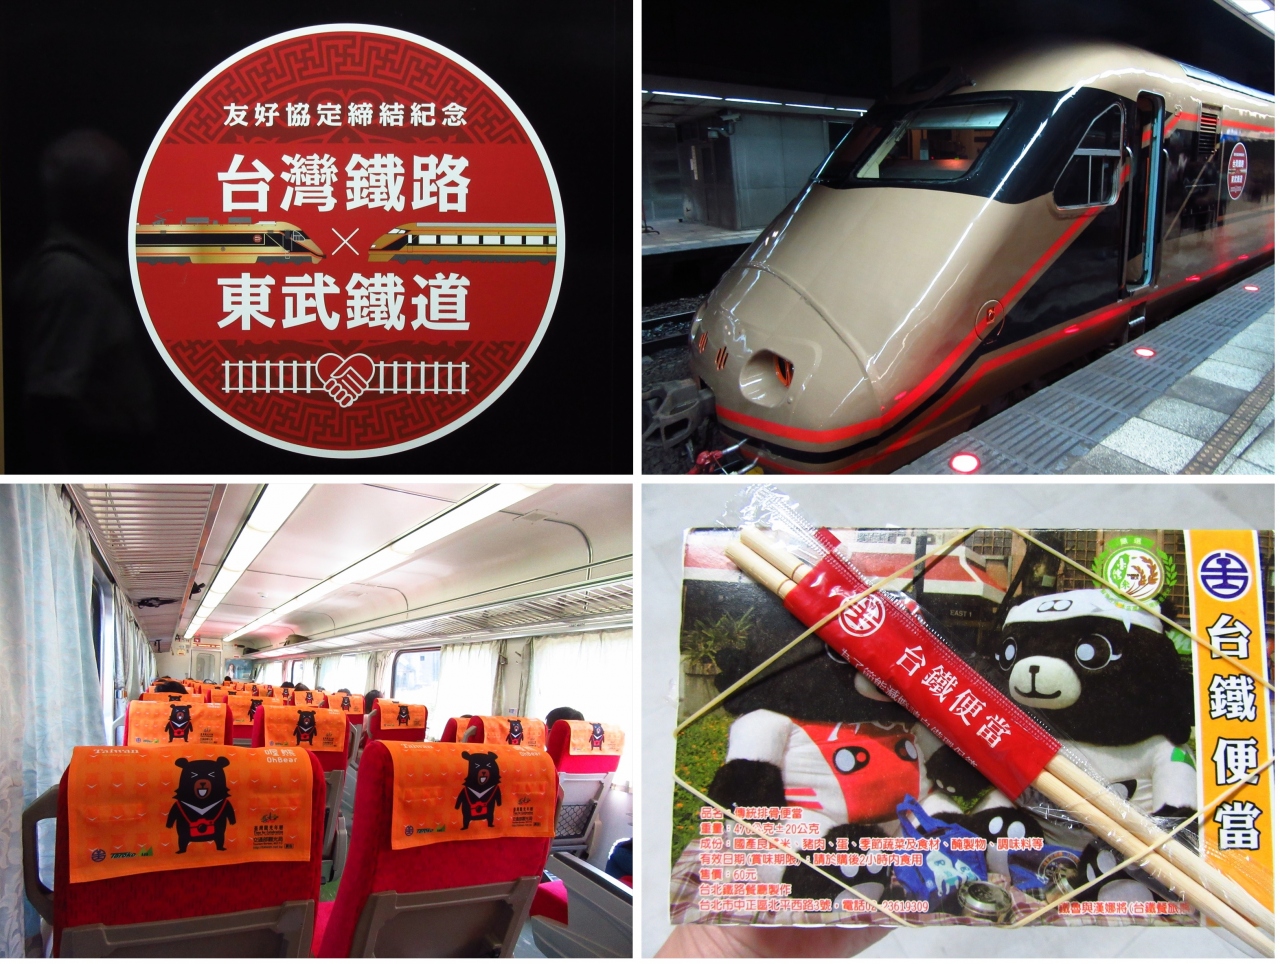 台湾鉄路管理局EMU400型電車